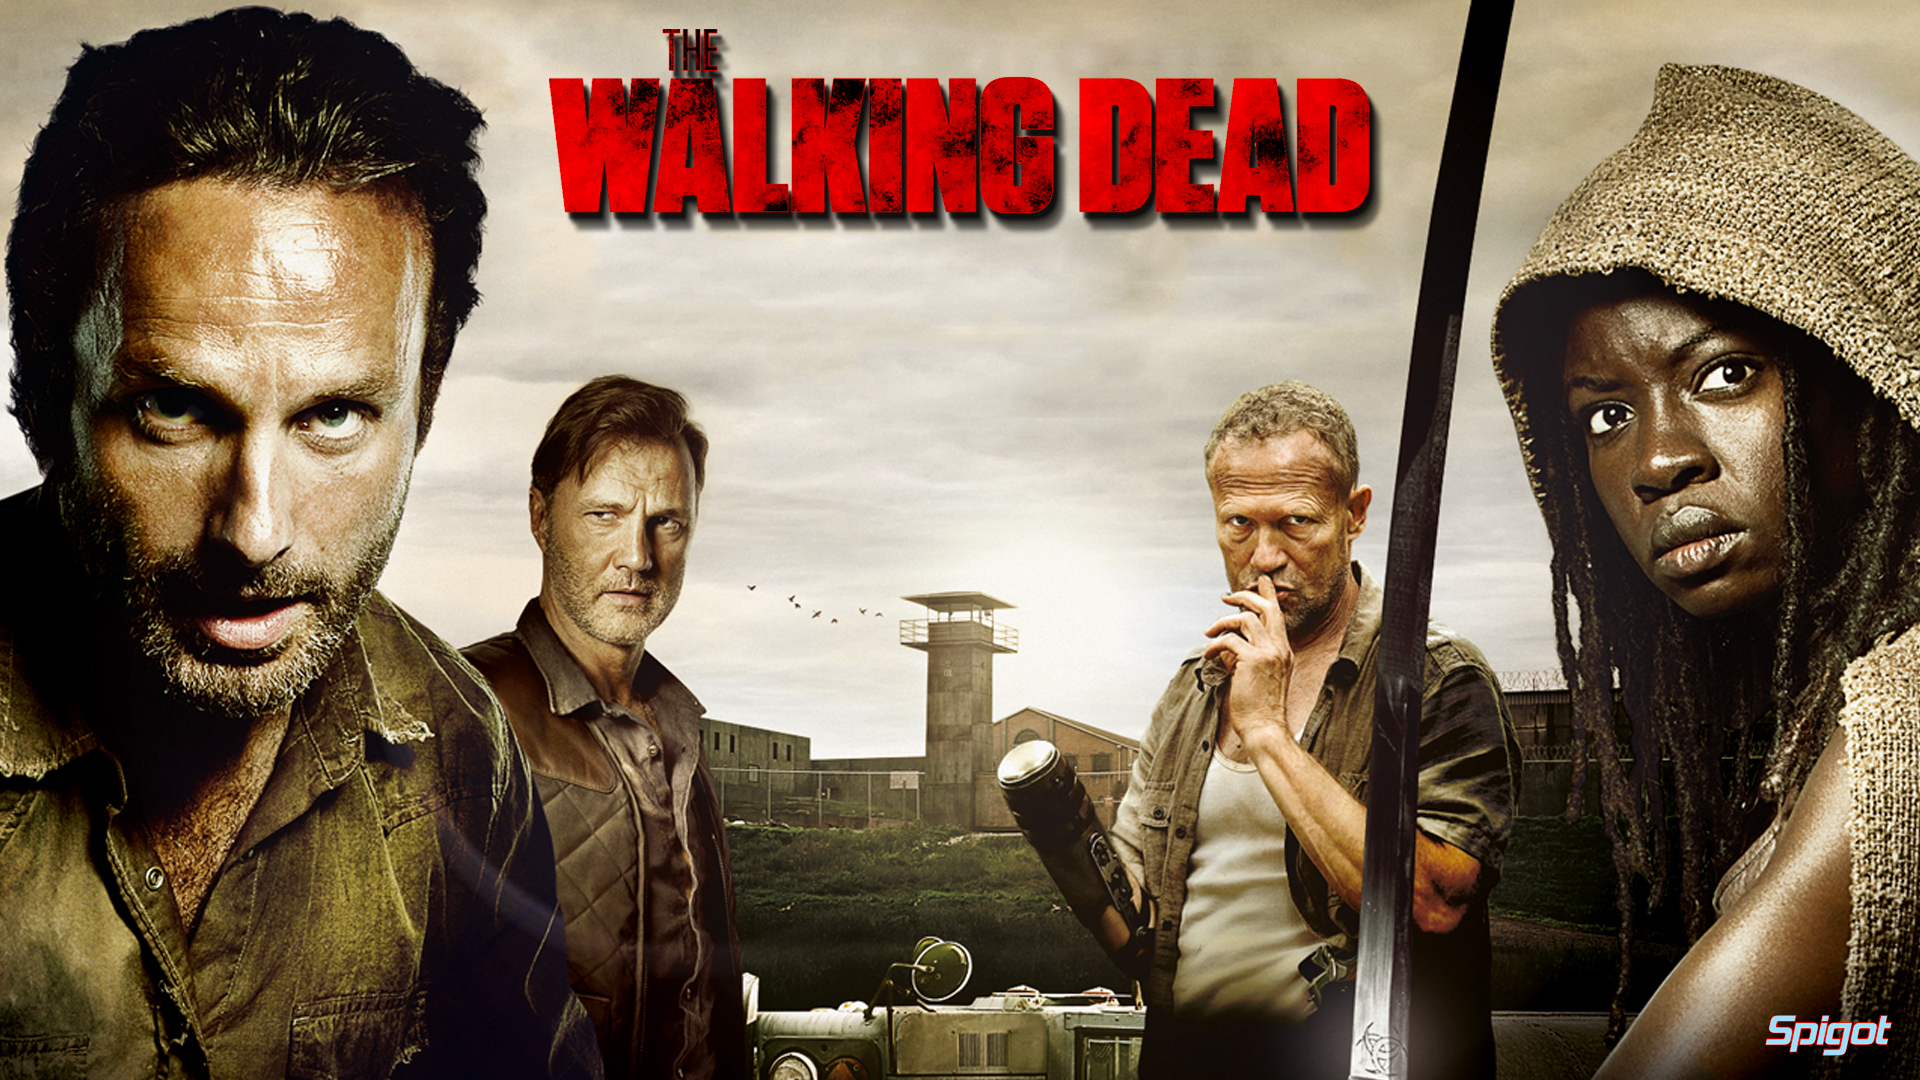 The Walking Dead Wallpaper HD 1080p Jpg